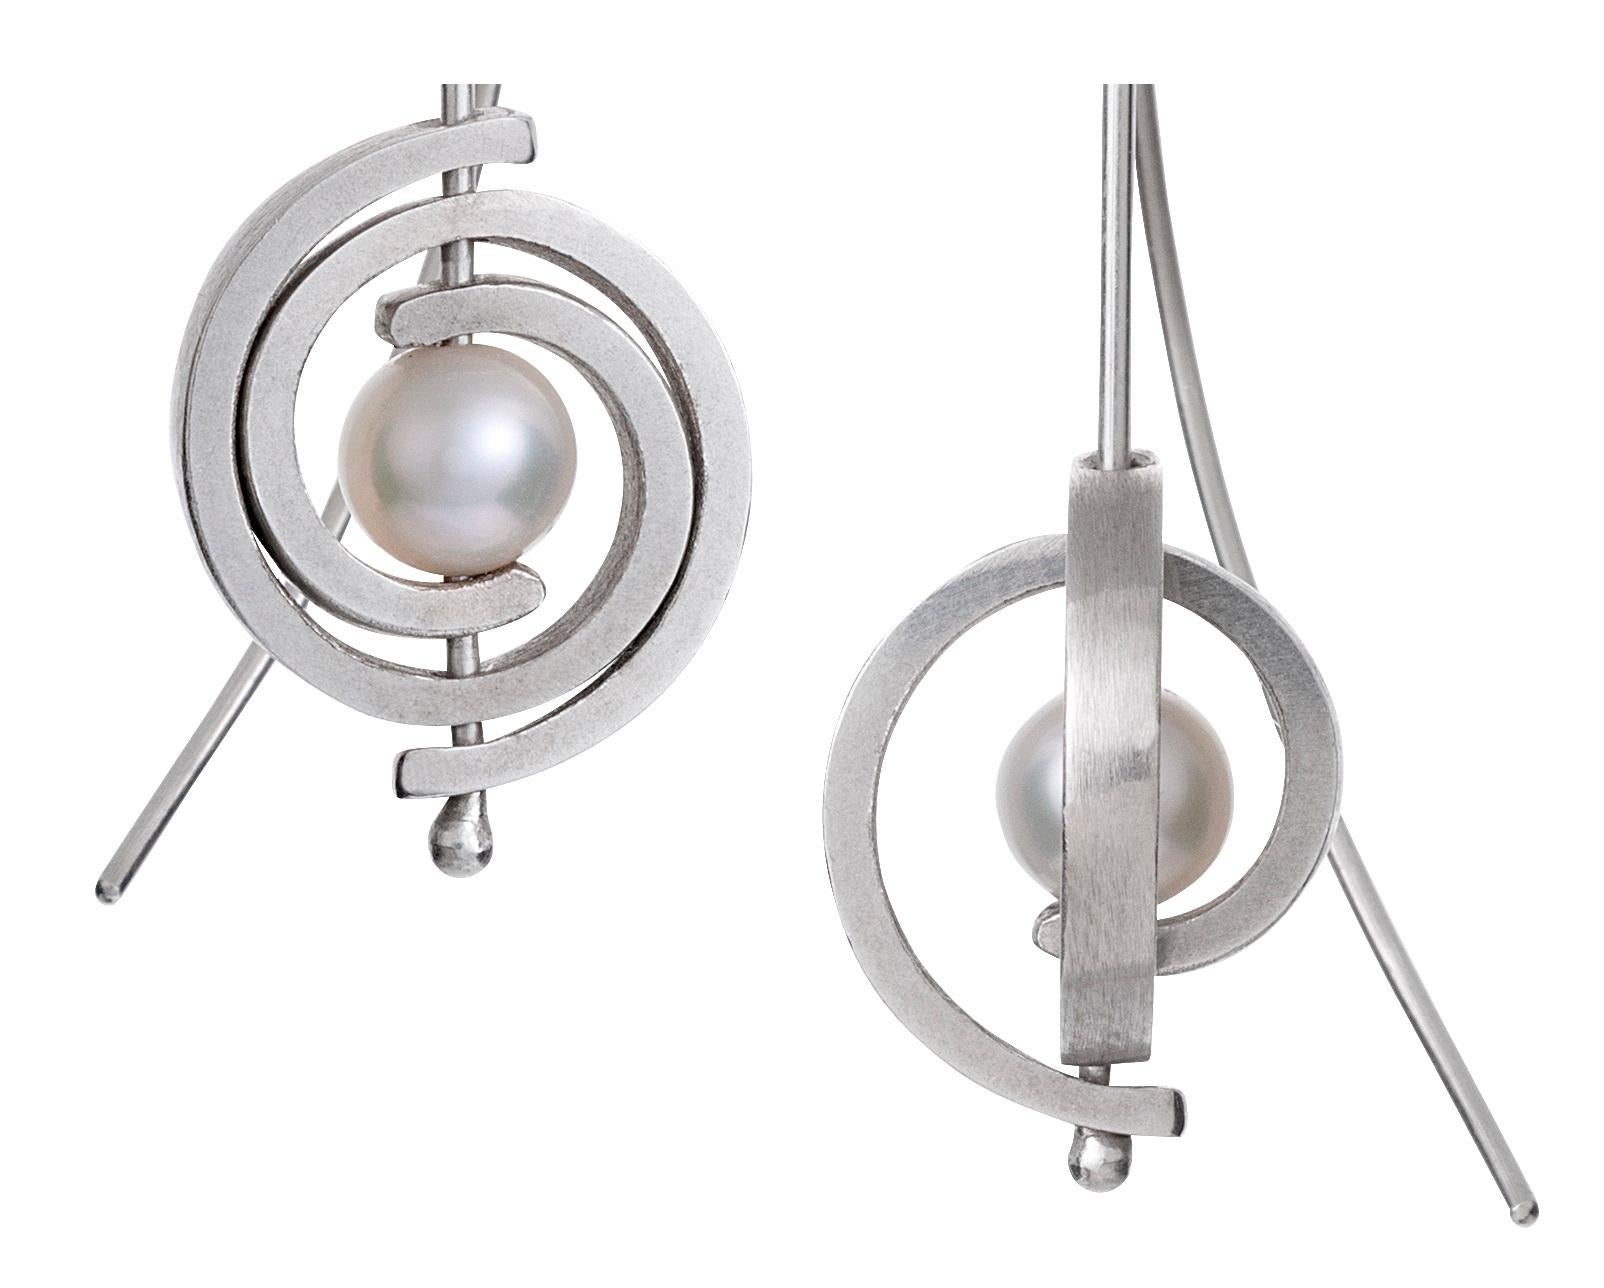 Die Petite Spiral Dangle Earrings aus der Orbit-Kollektion sind ein moderner Ohrring-Klassiker.  Sie sind wie kleine leuchtende Planeten mit Ringen. Die Ohrringe baumeln 1,5